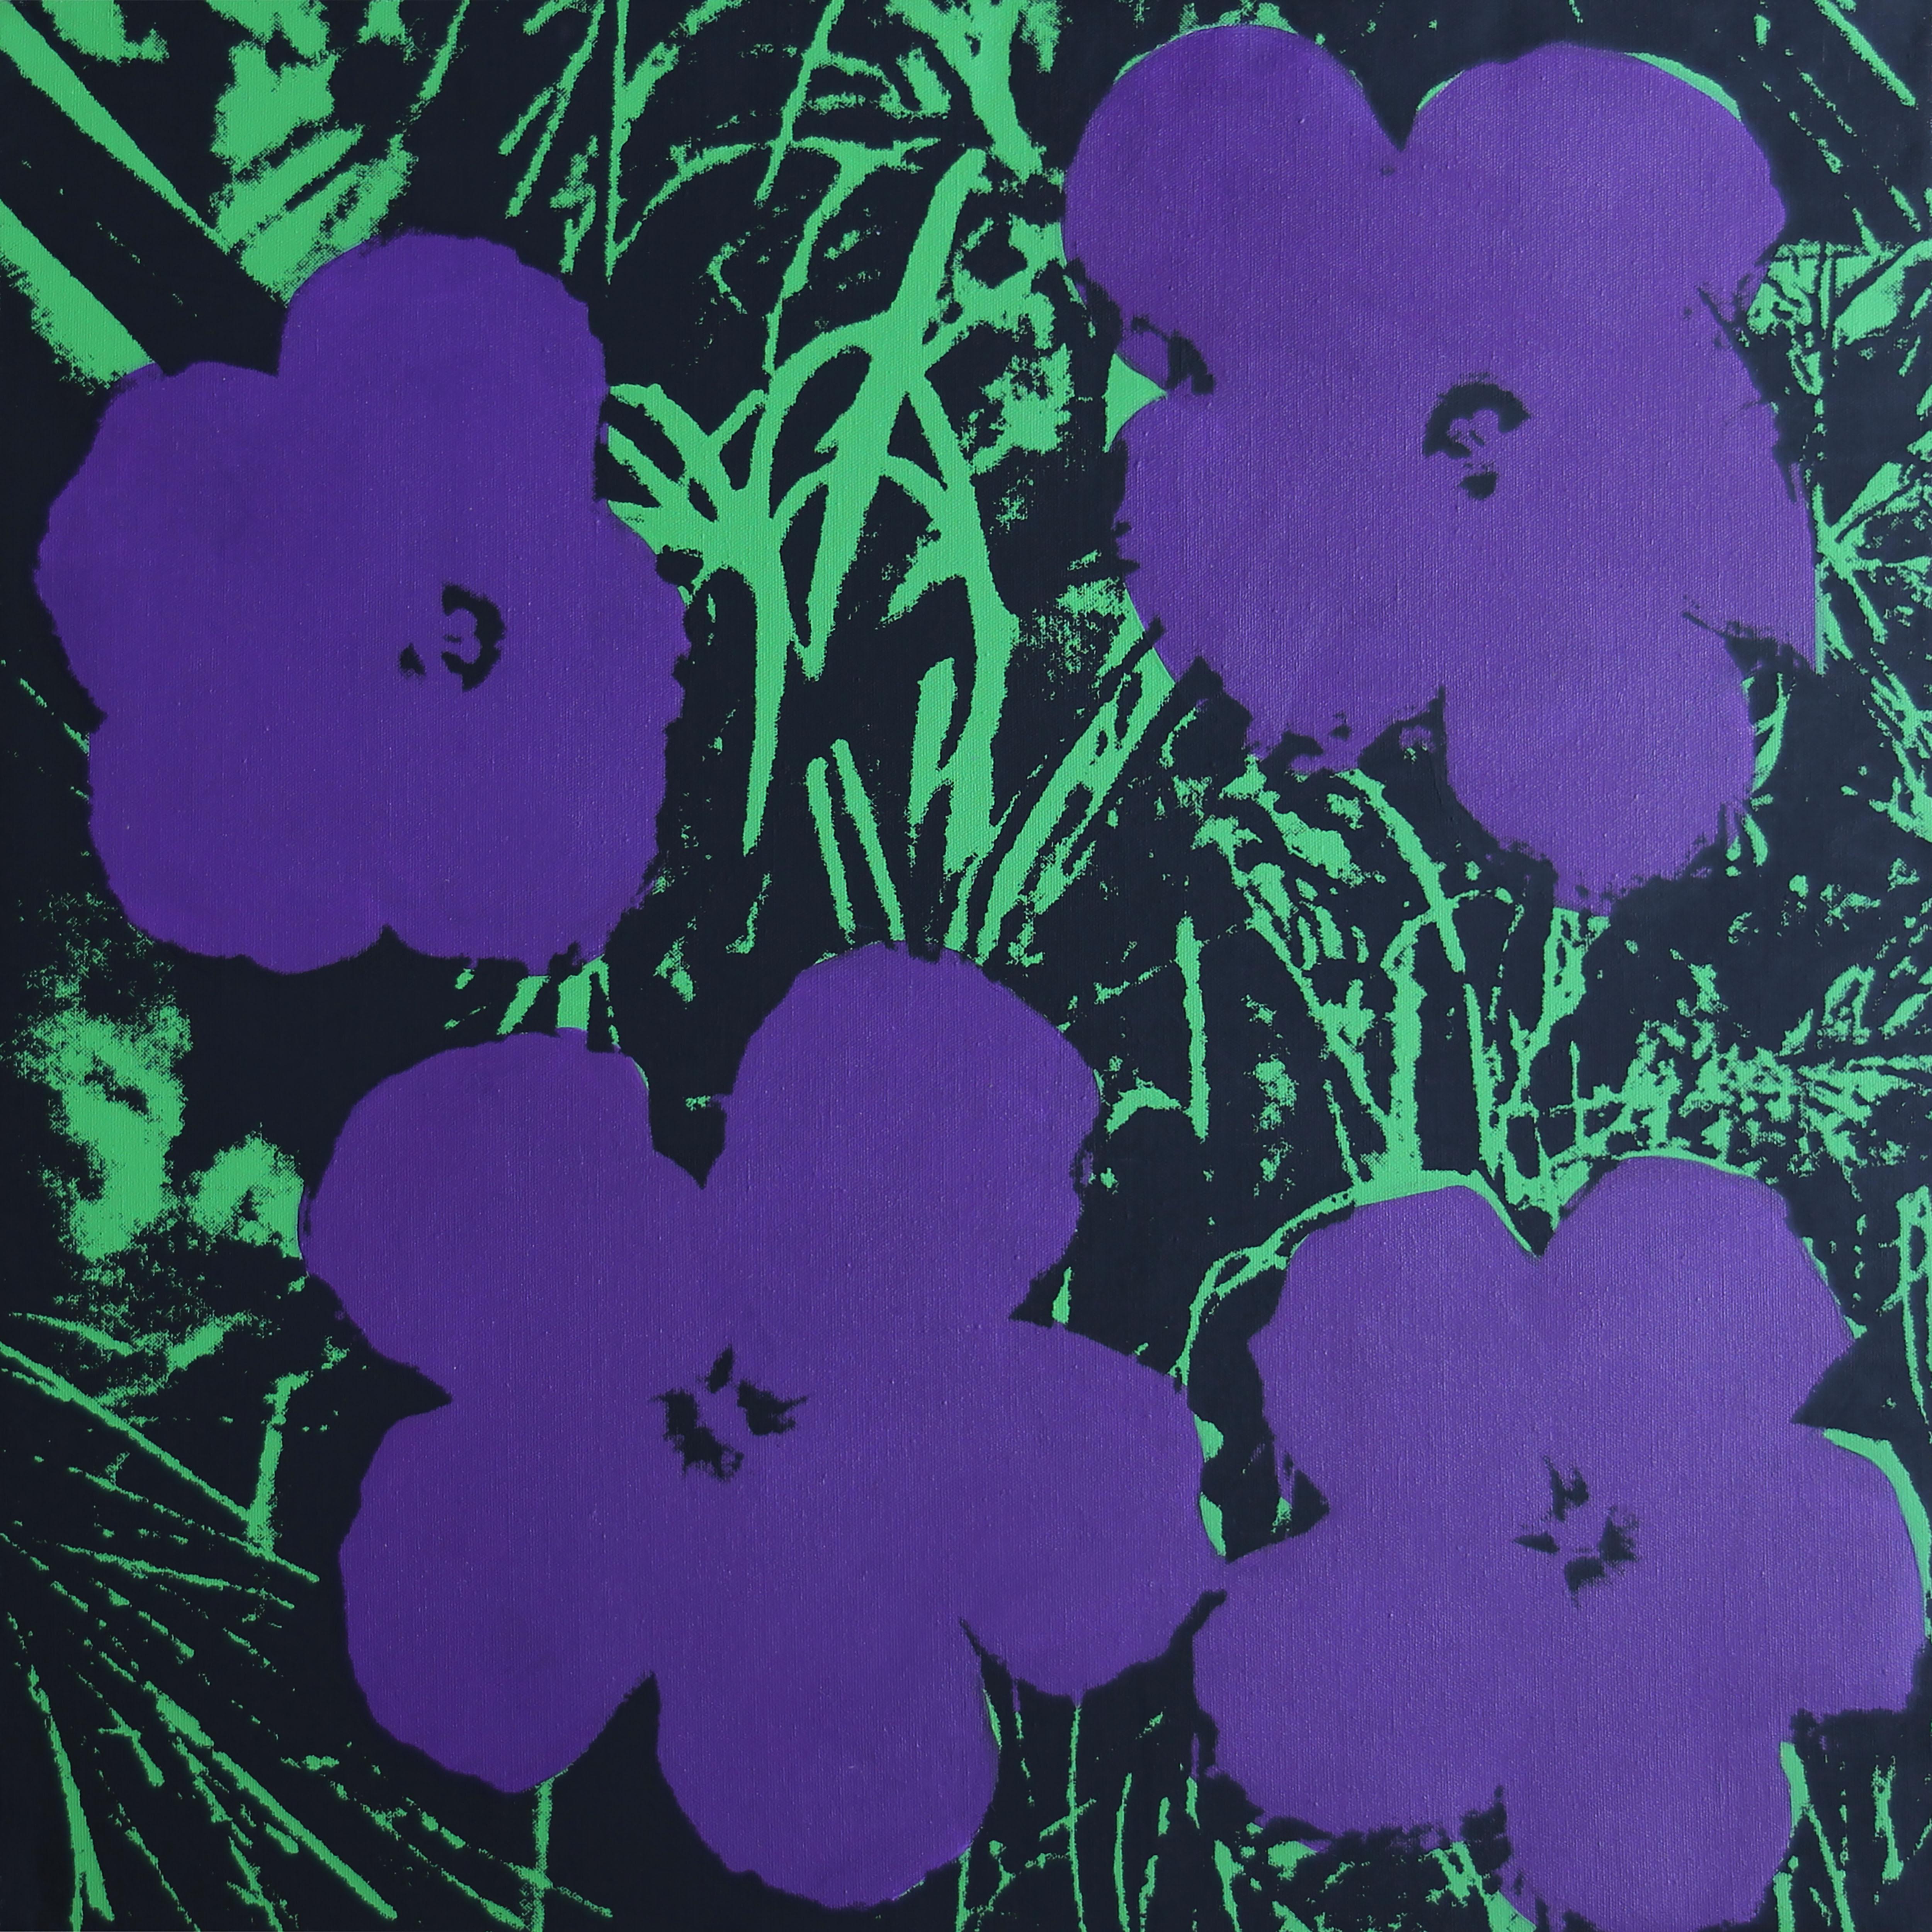 Verweigerte Warhol-Blumen, (Violett/Lila) Siebdruck von Charles Lutz
Siebdruck und Acryl auf Leinwand mit Verweigerungsstempel des Andy Warhol Art Authentication Board.
24 x 24" Zoll
2008

Lutz' Serie "Warhol Denied" aus dem Jahr 2007 erregte